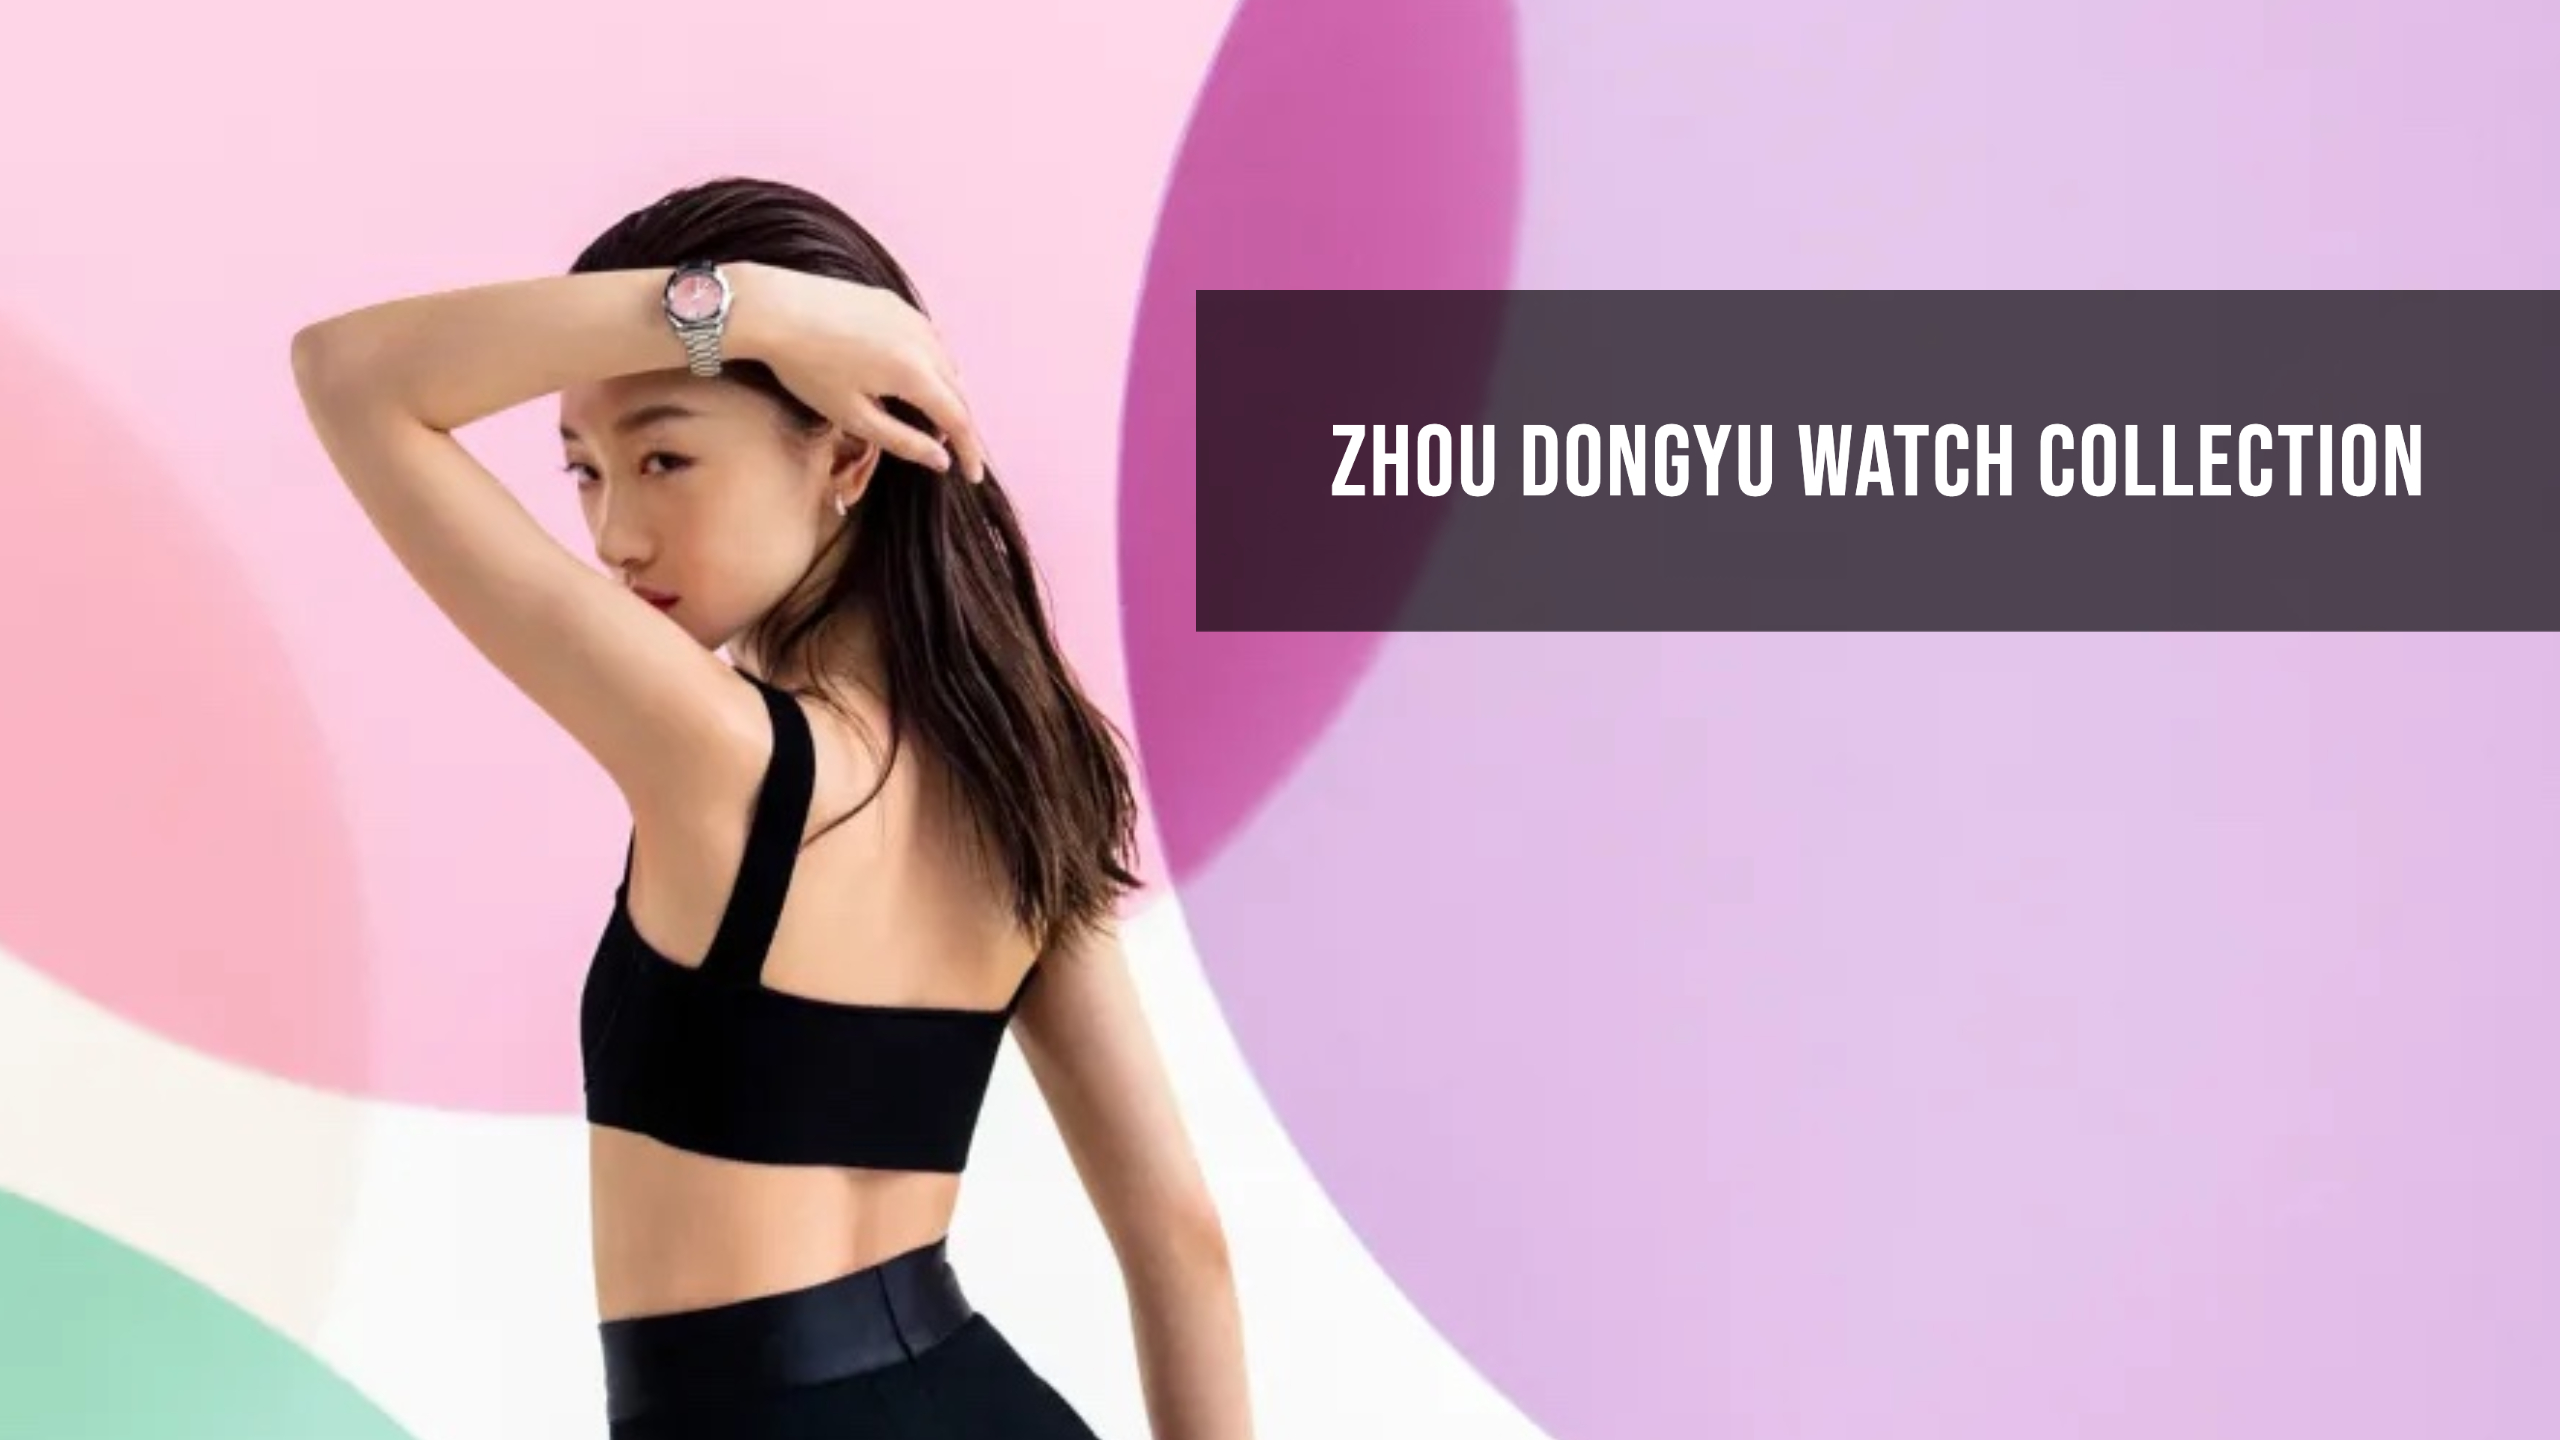 Zhou Dongyu Watch Collection